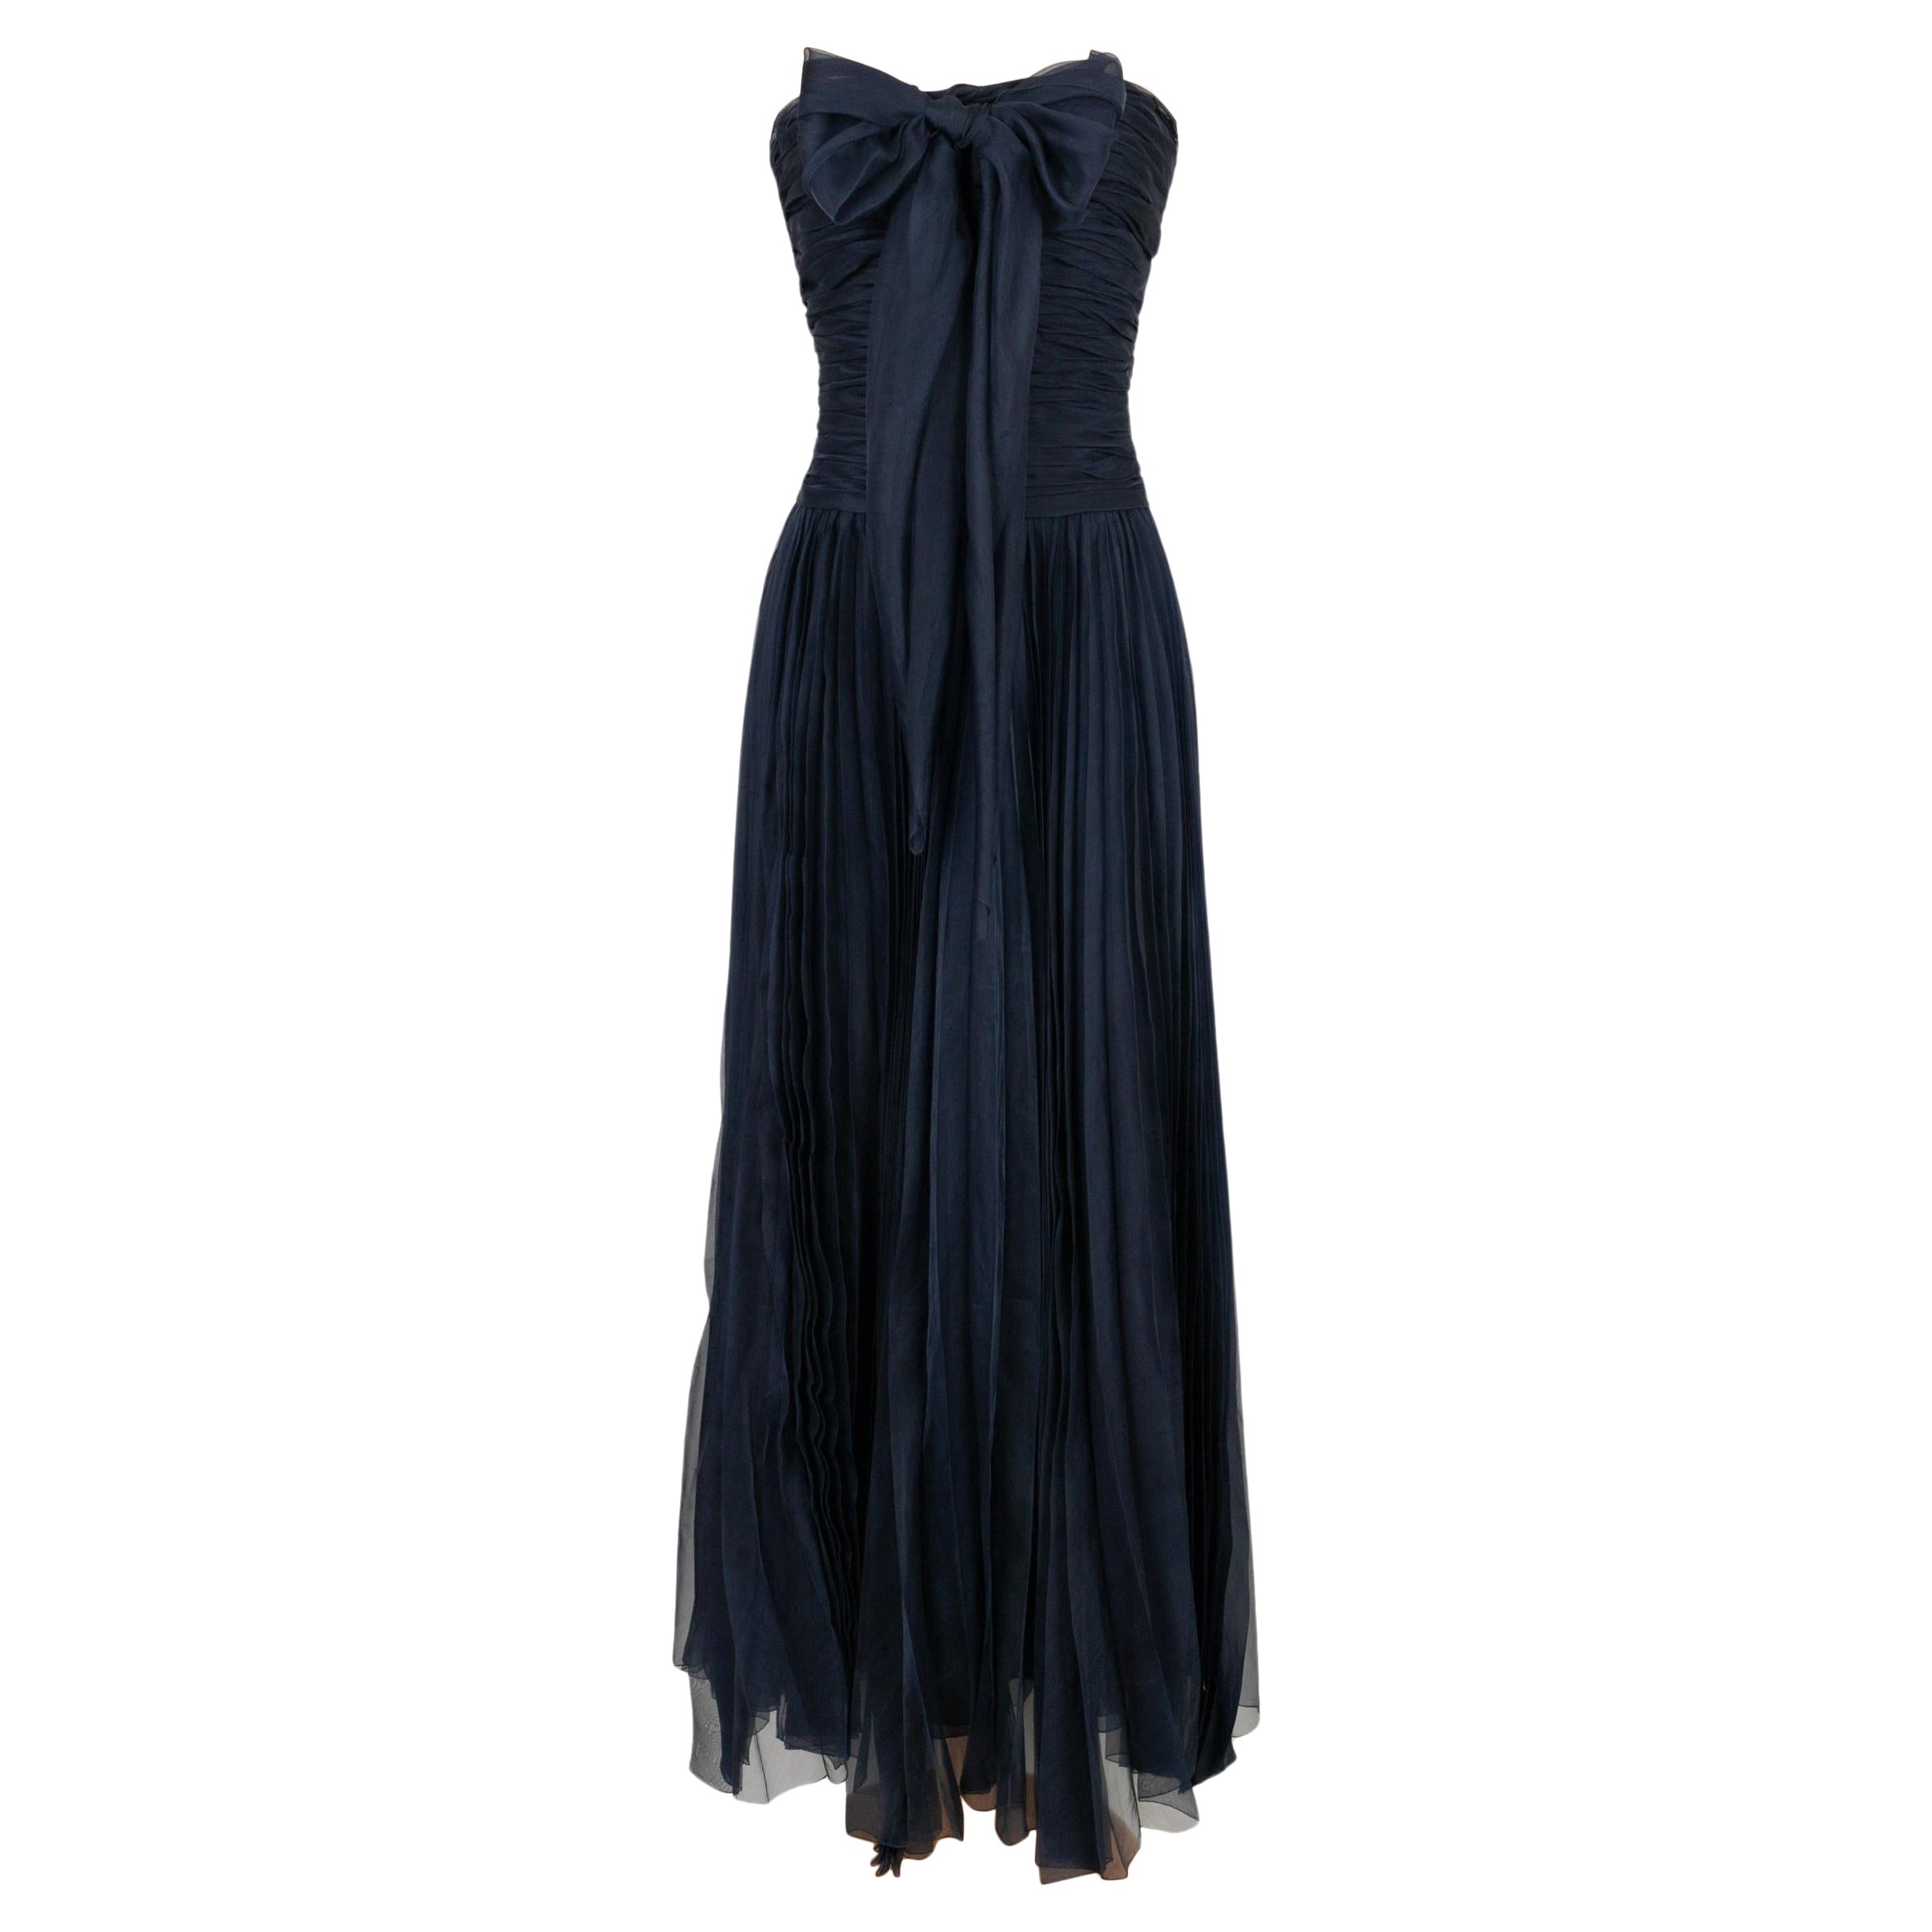 Chanel Long Bustier Dress in Navy Blue Pleated Silk Taffeta For Sale